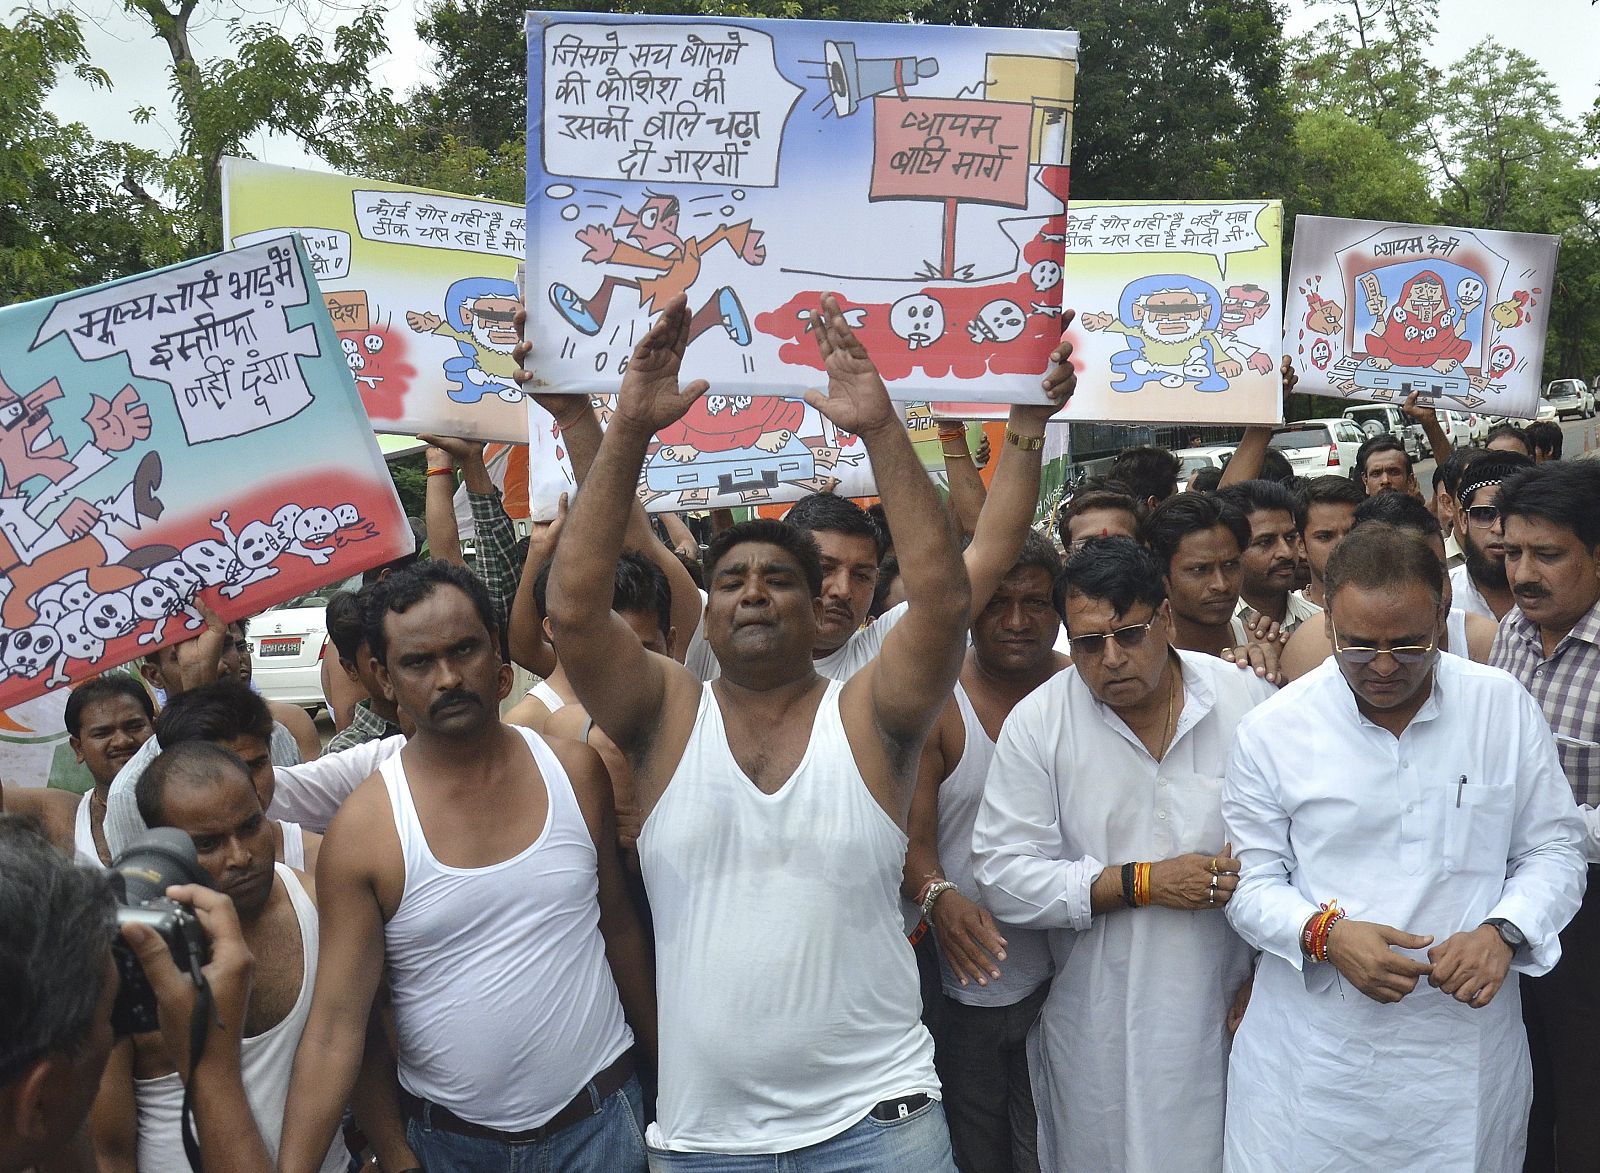 Activistas de la oposición en una protesta demandan la dimisión del Jefe de ministros del estado de Mashya Pradesh, Shivraj Singh Chouhan , en India.